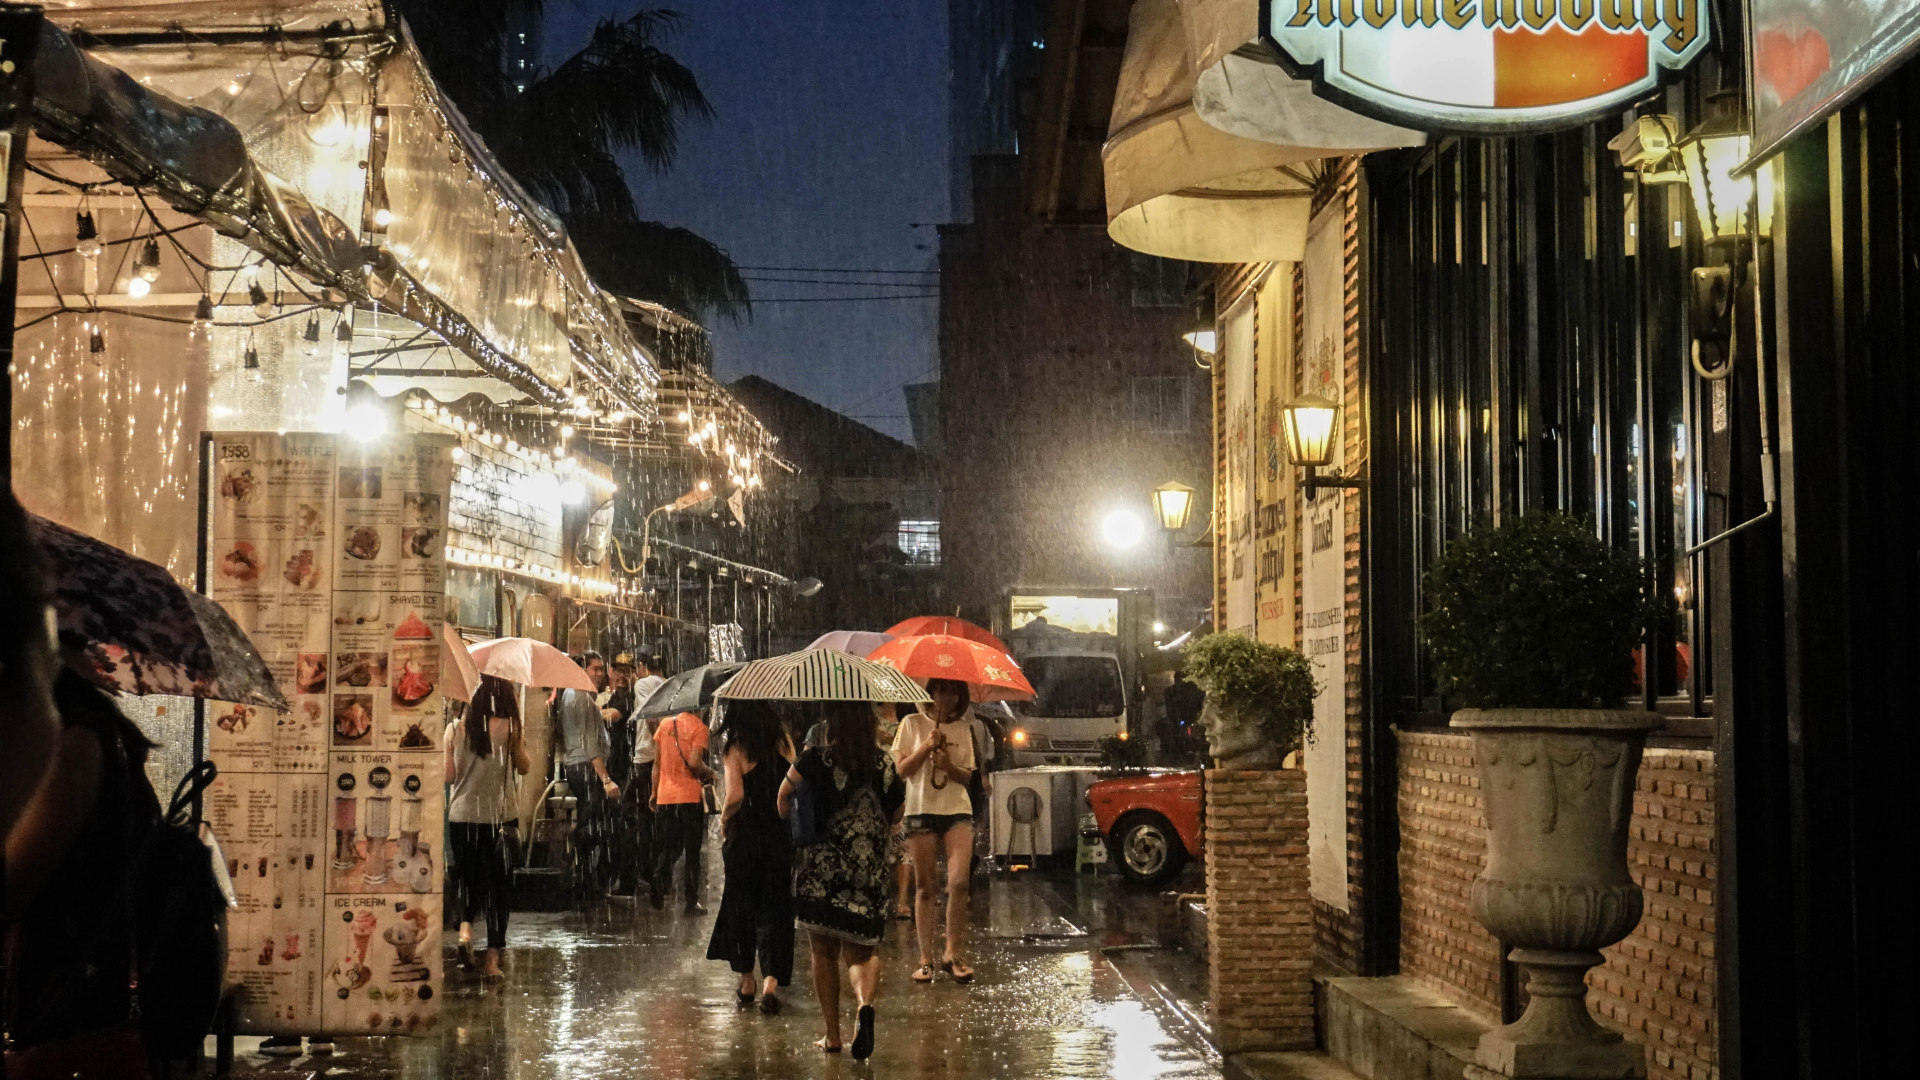 rain at the night market in Bangkok